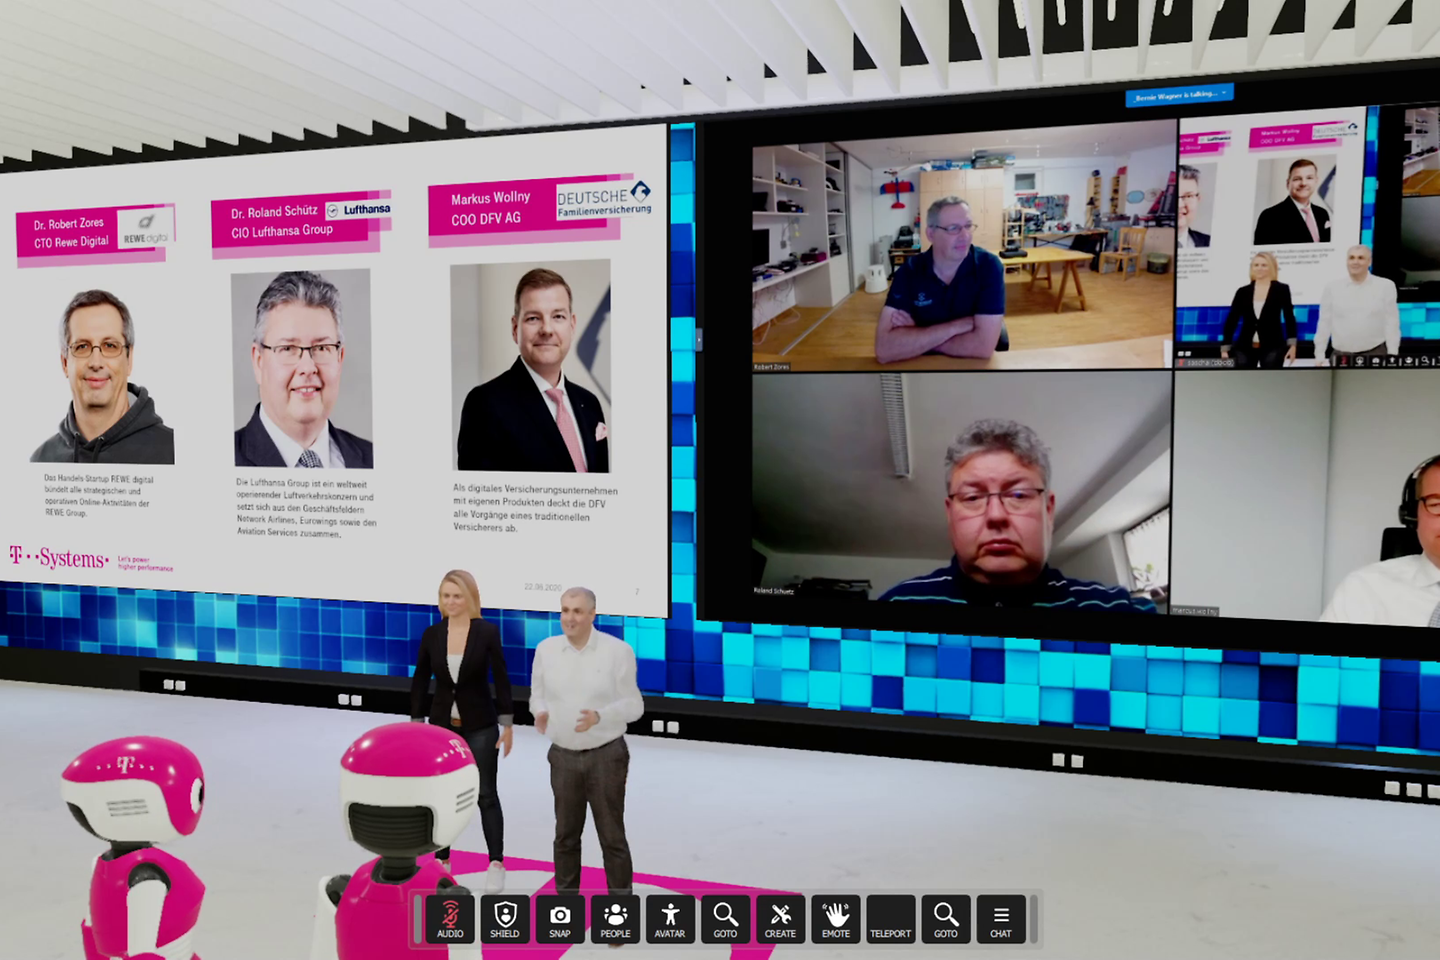 Videokonferenz in einem virtuellen Raum mit zwei Personen auf einem Bildschirm via Webcam und zwei virtuellen Moderatoren